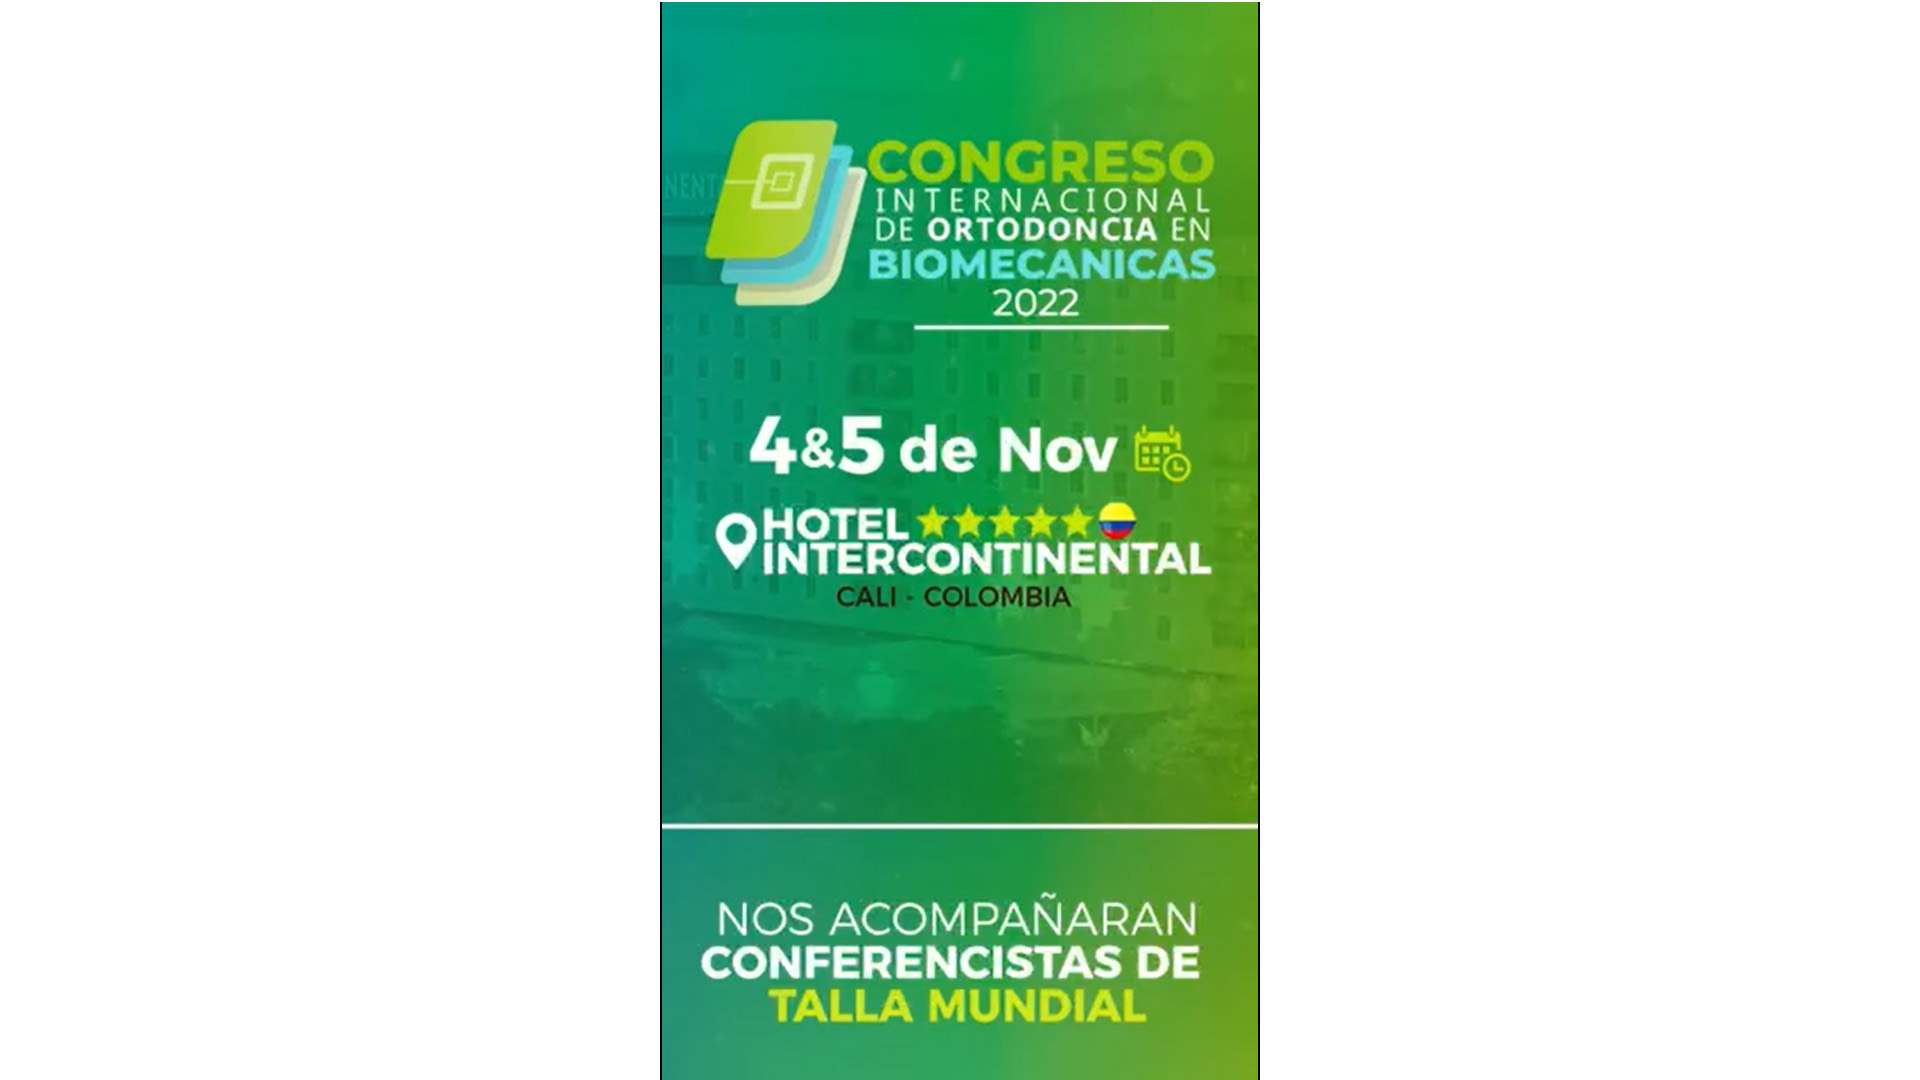 Congreso Internacional de Ortodoncia en Biomecánicas